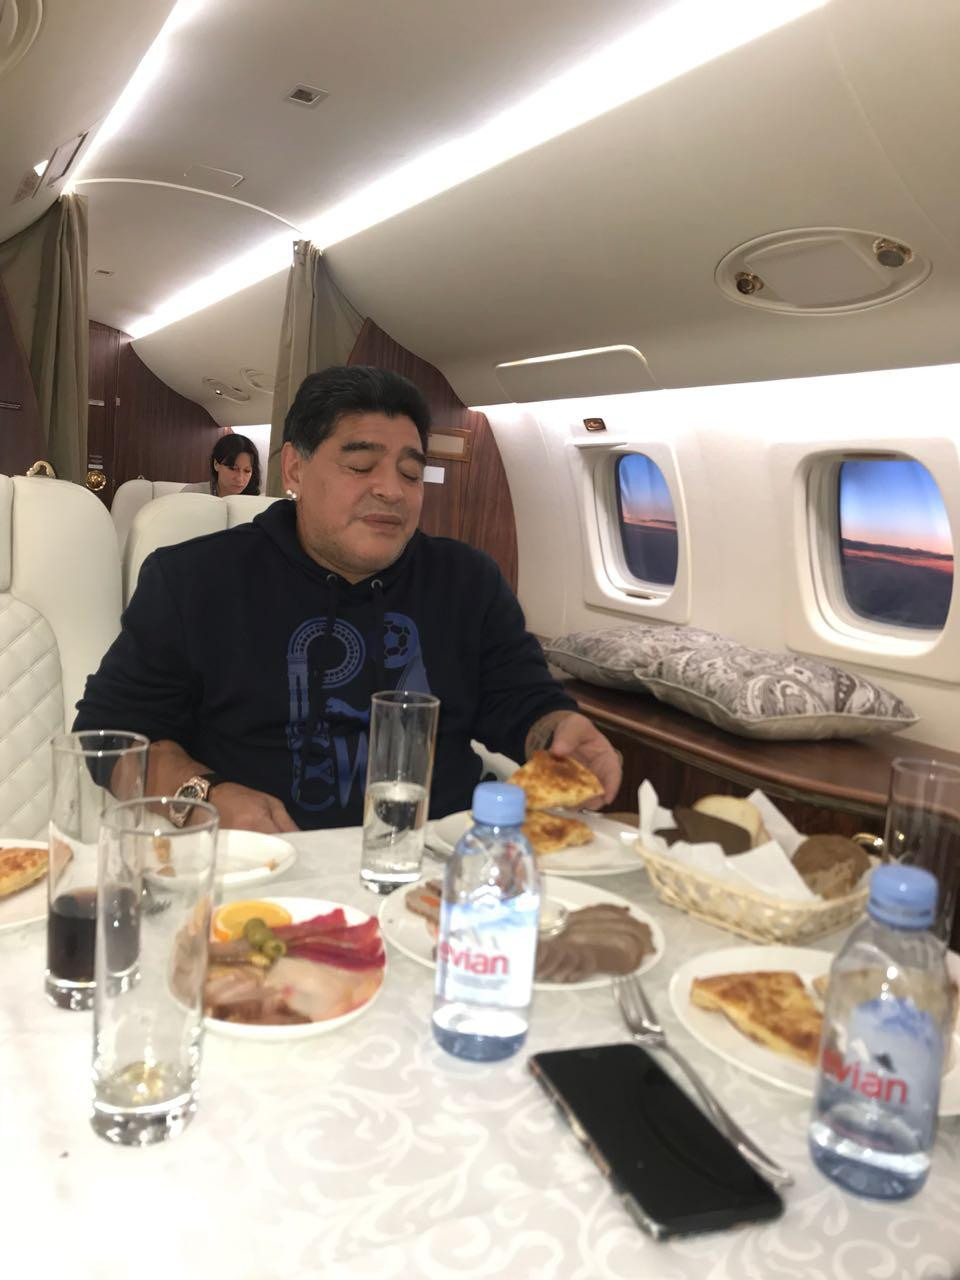 Diego Maradona tras rumores de muerte